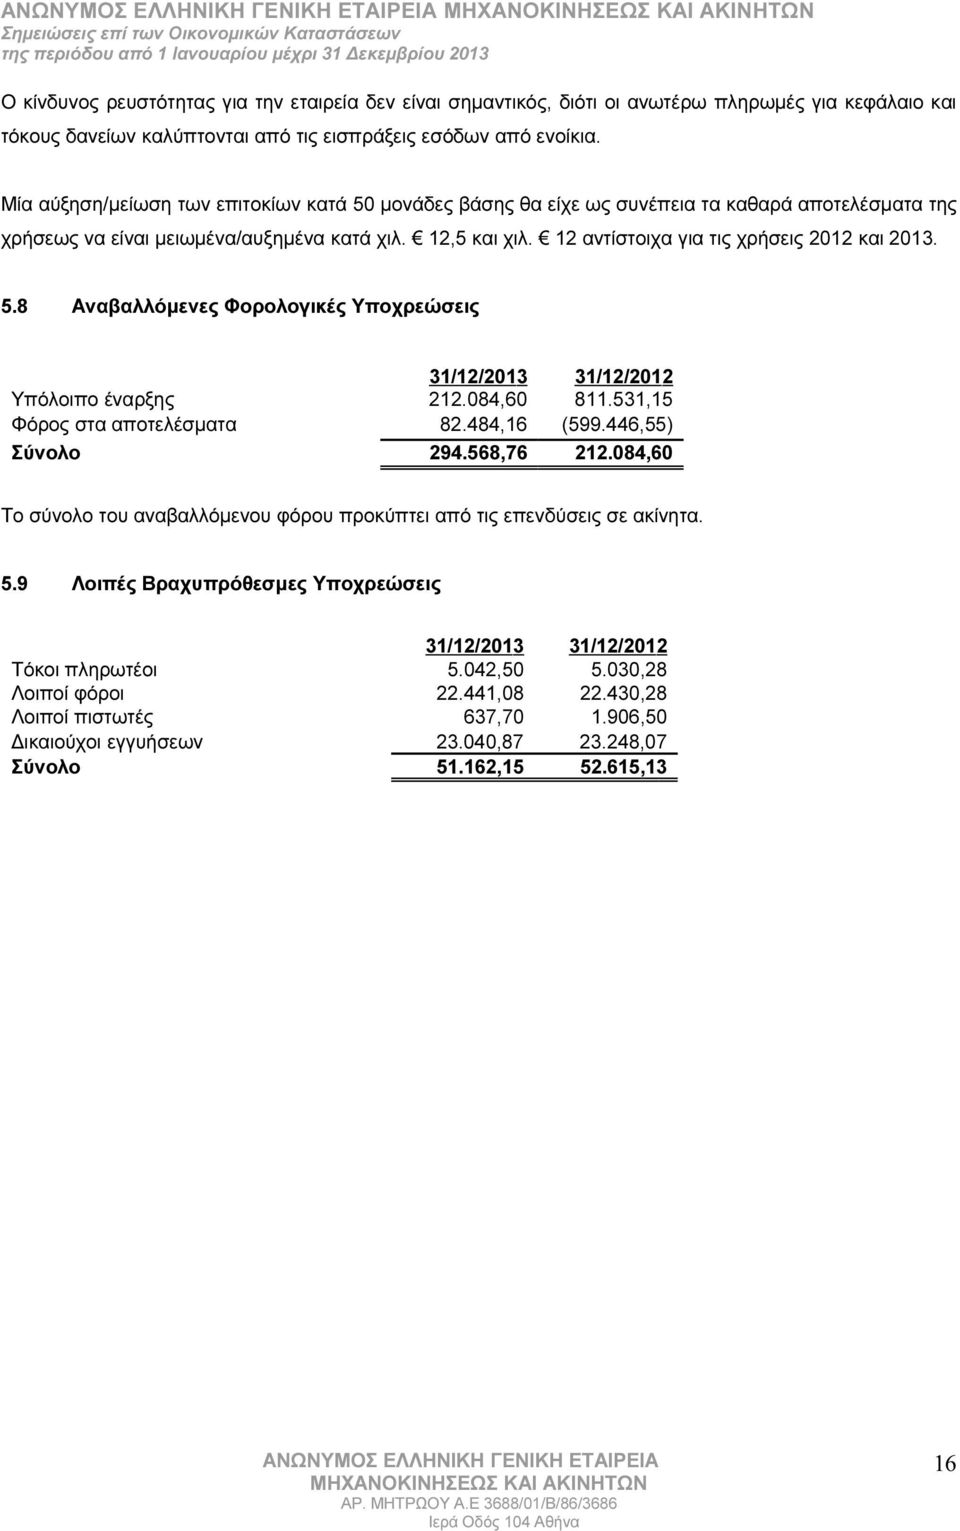 12 αντίστοιχα για τις χρήσεις 2012 και 2013. 5.8 Αναβαλλόμενες Φορολογικές Υποχρεώσεις 31/12/2013 31/12/2012 Υπόλοιπο έναρξης 212.084,60 811.531,15 Φόρος στα αποτελέσματα 82.484,16 (599.